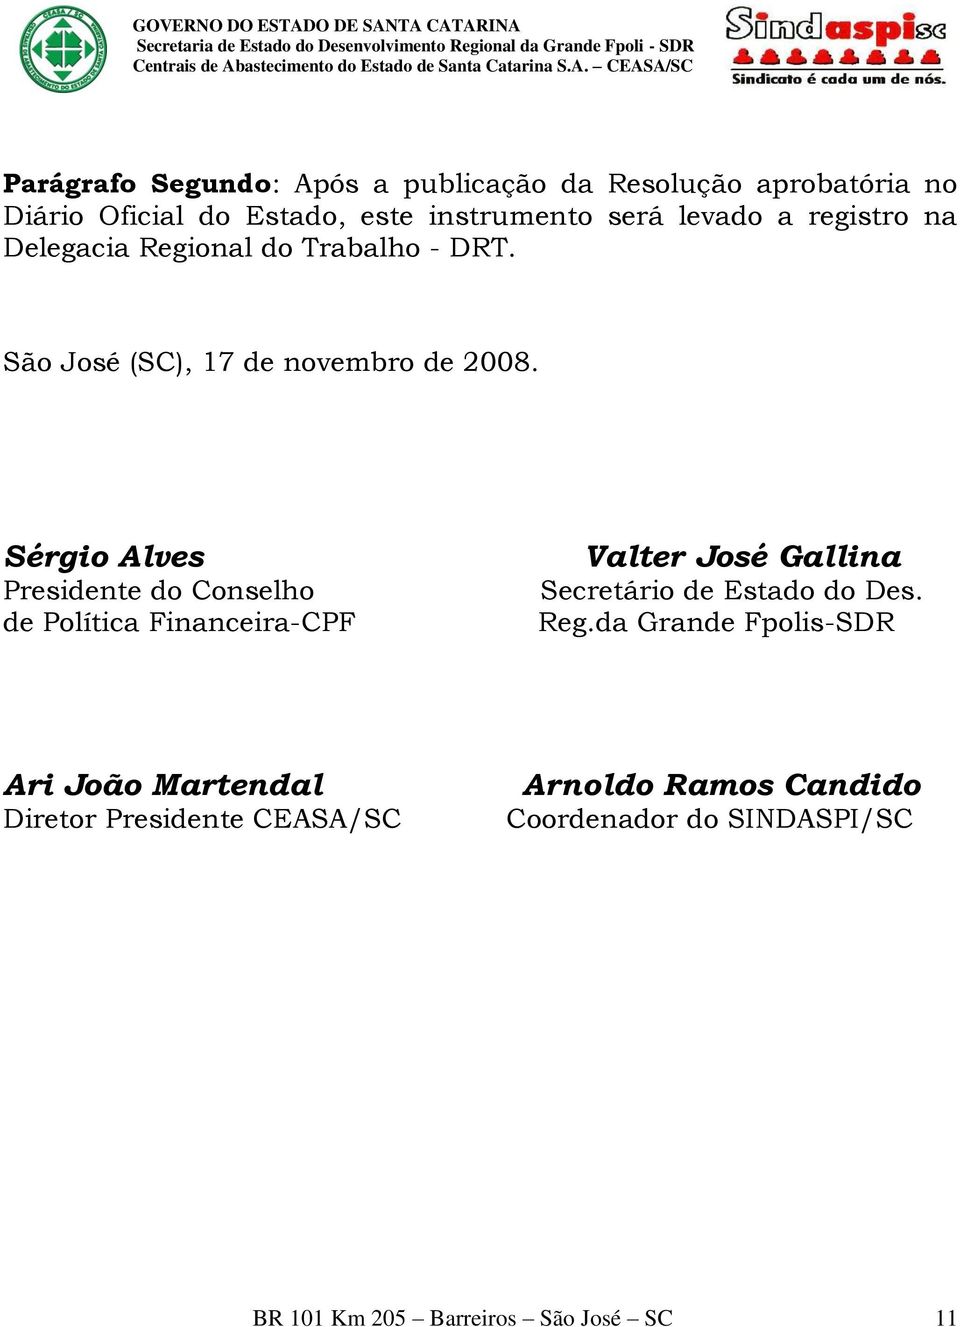 Sérgio Alves Presidente do Conselho de Política Financeira-CPF Valter José Gallina Secretário de Estado do Des. Reg.